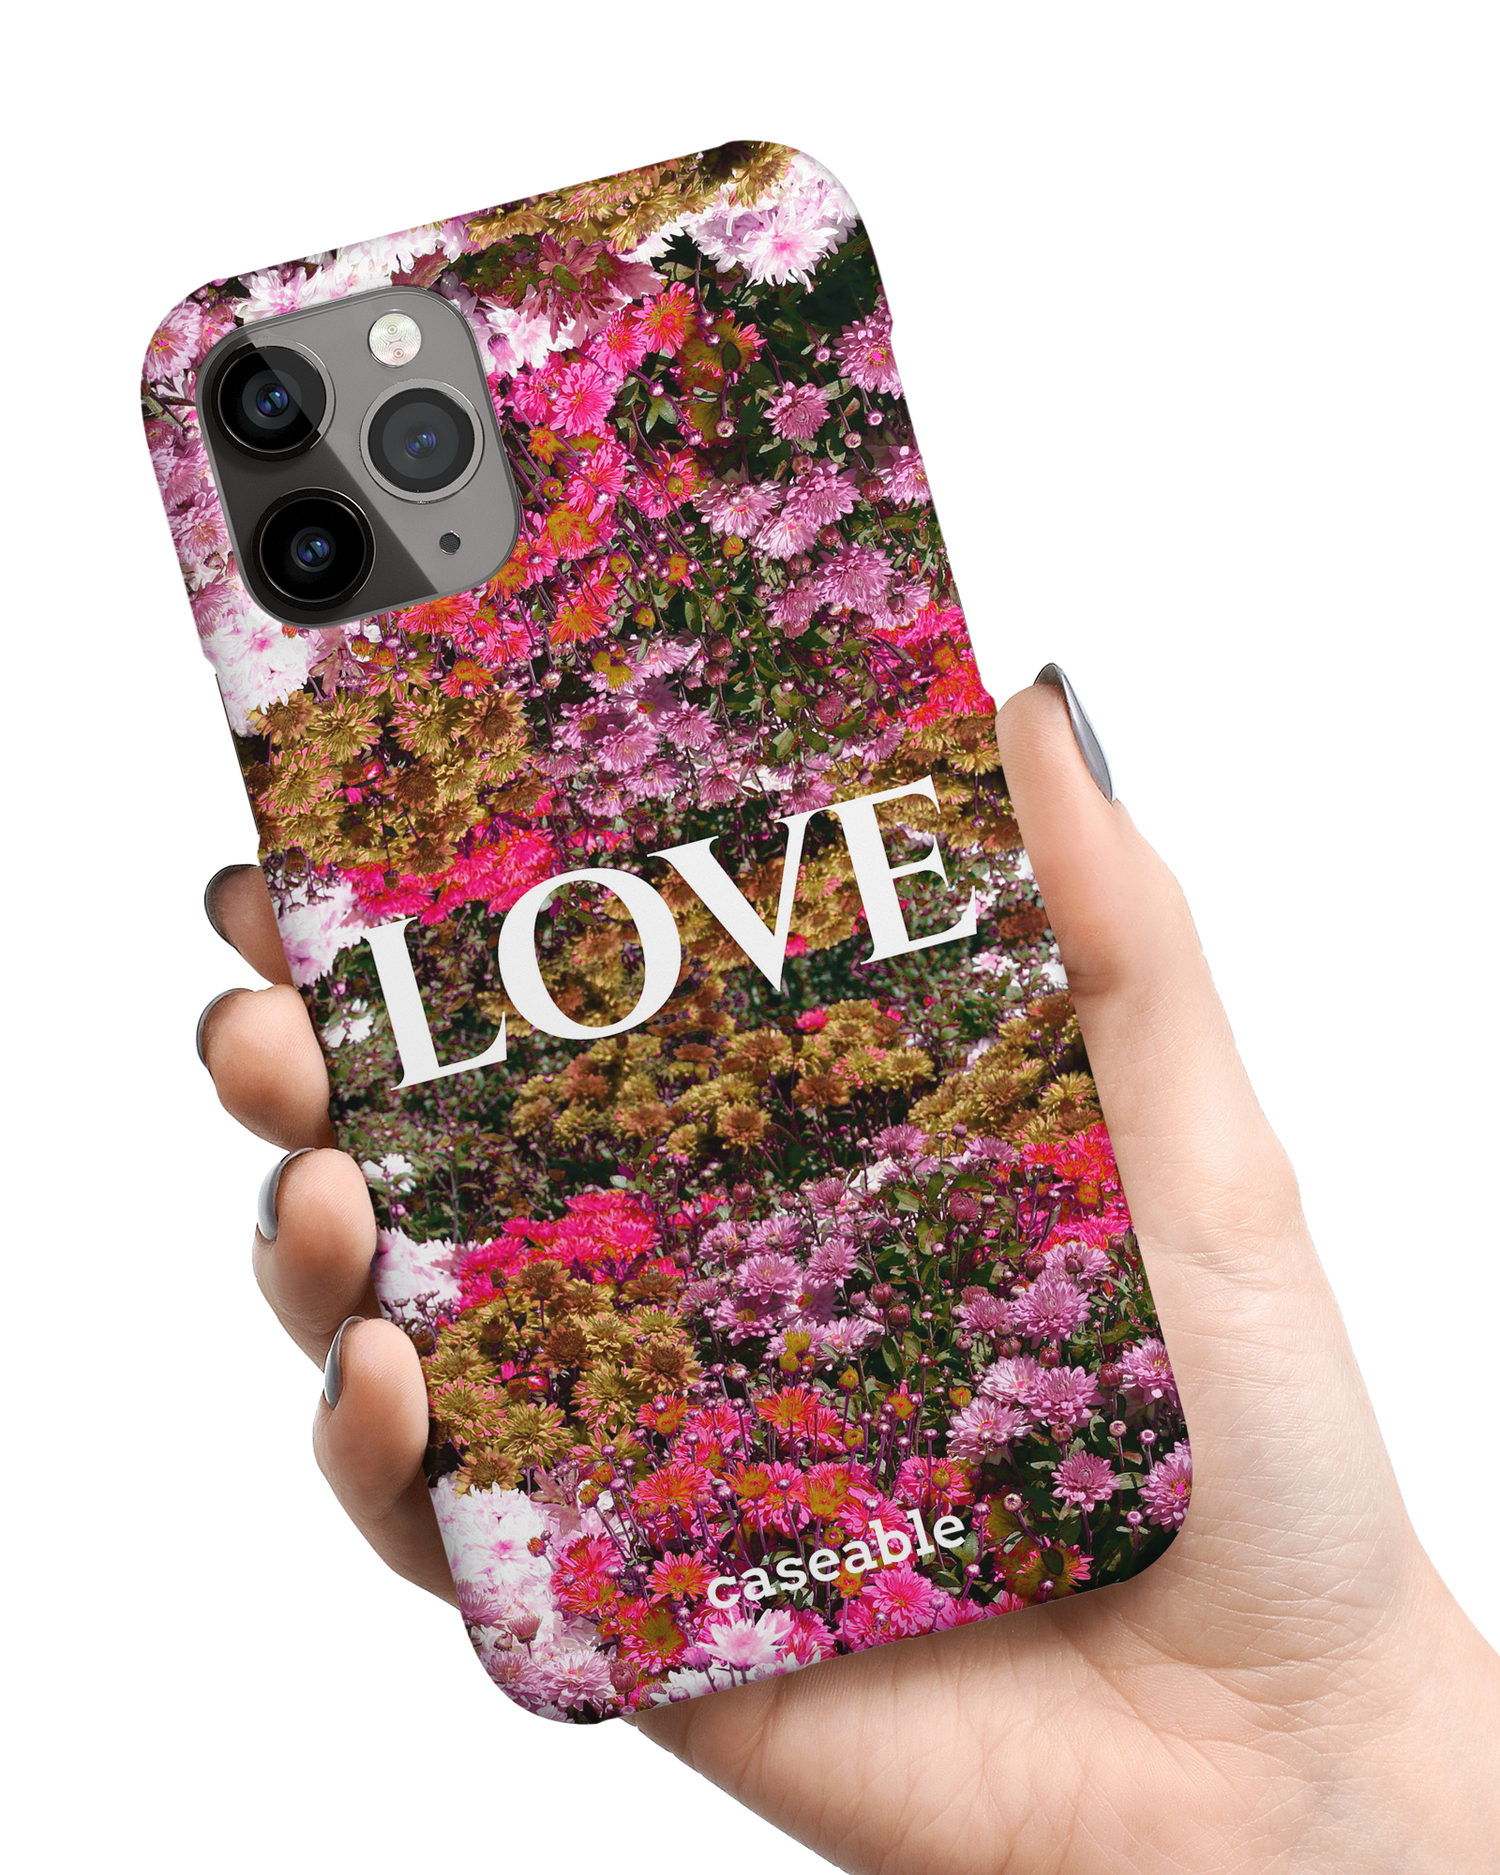 Luxe Love Hardcase Handyhülle Apple iPhone 11 Pro in der Hand gehalten